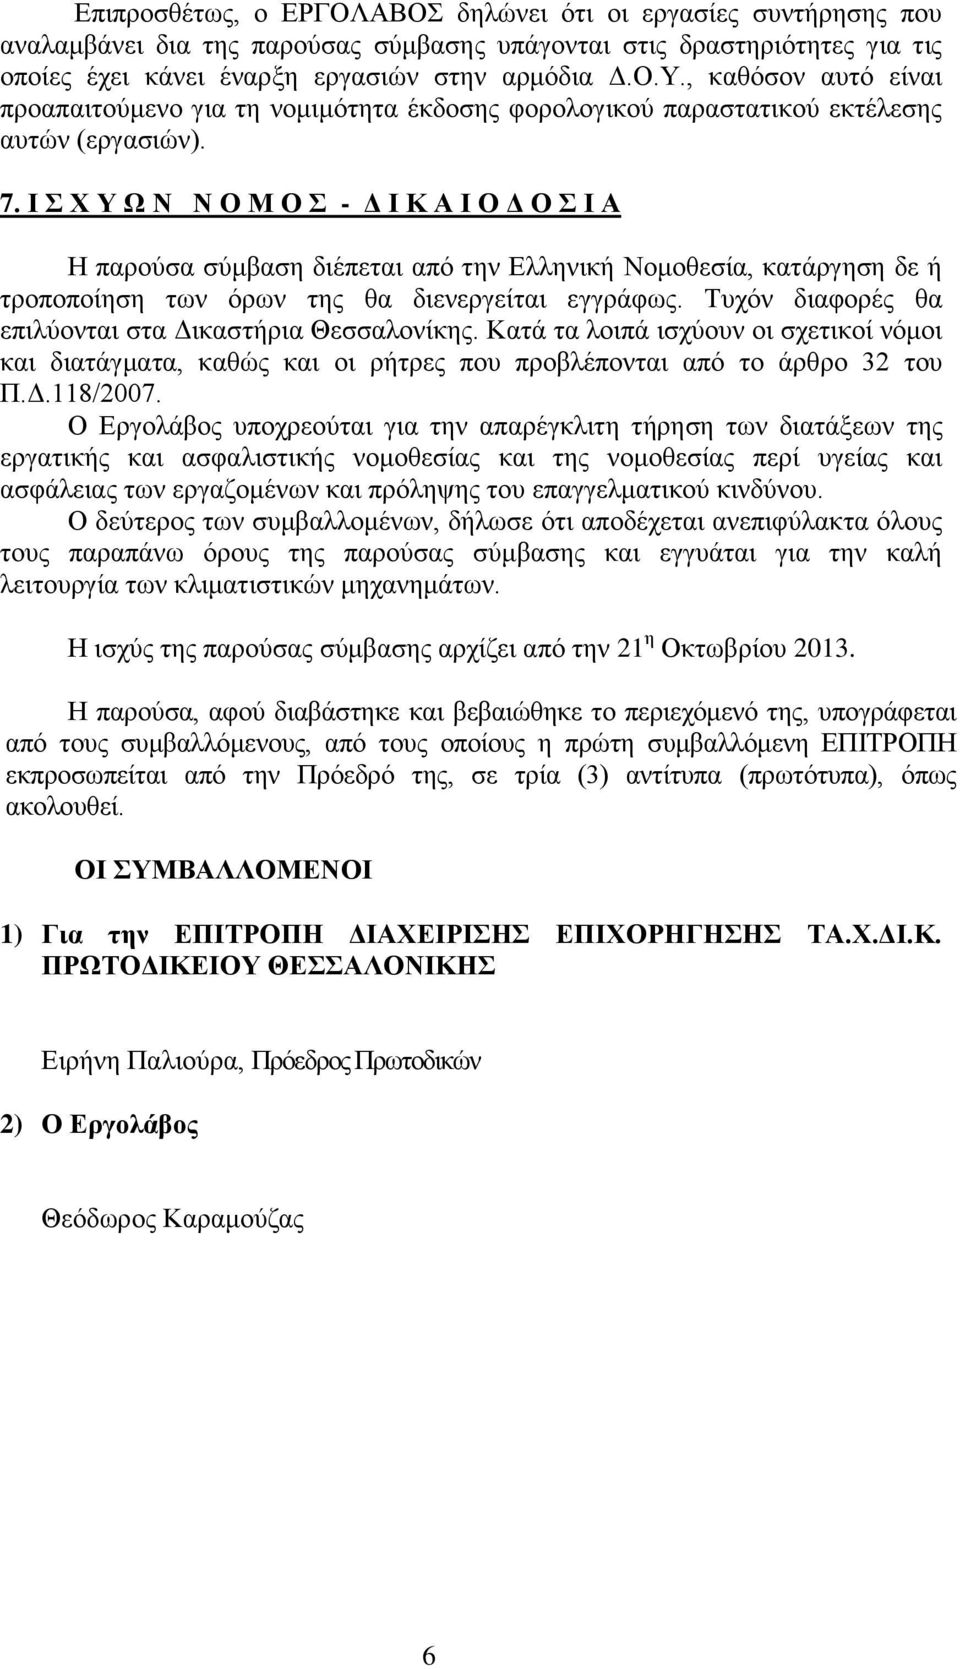 Ι Σ Χ Υ Ω Ν Ν Ο Μ Ο Σ - Δ Ι Κ Α Ι Ο Δ Ο Σ Ι Α Η παρούσα σύμβαση διέπεται από την Ελληνική Νομοθεσία, κατάργηση δε ή τροποποίηση των όρων της θα διενεργείται εγγράφως.